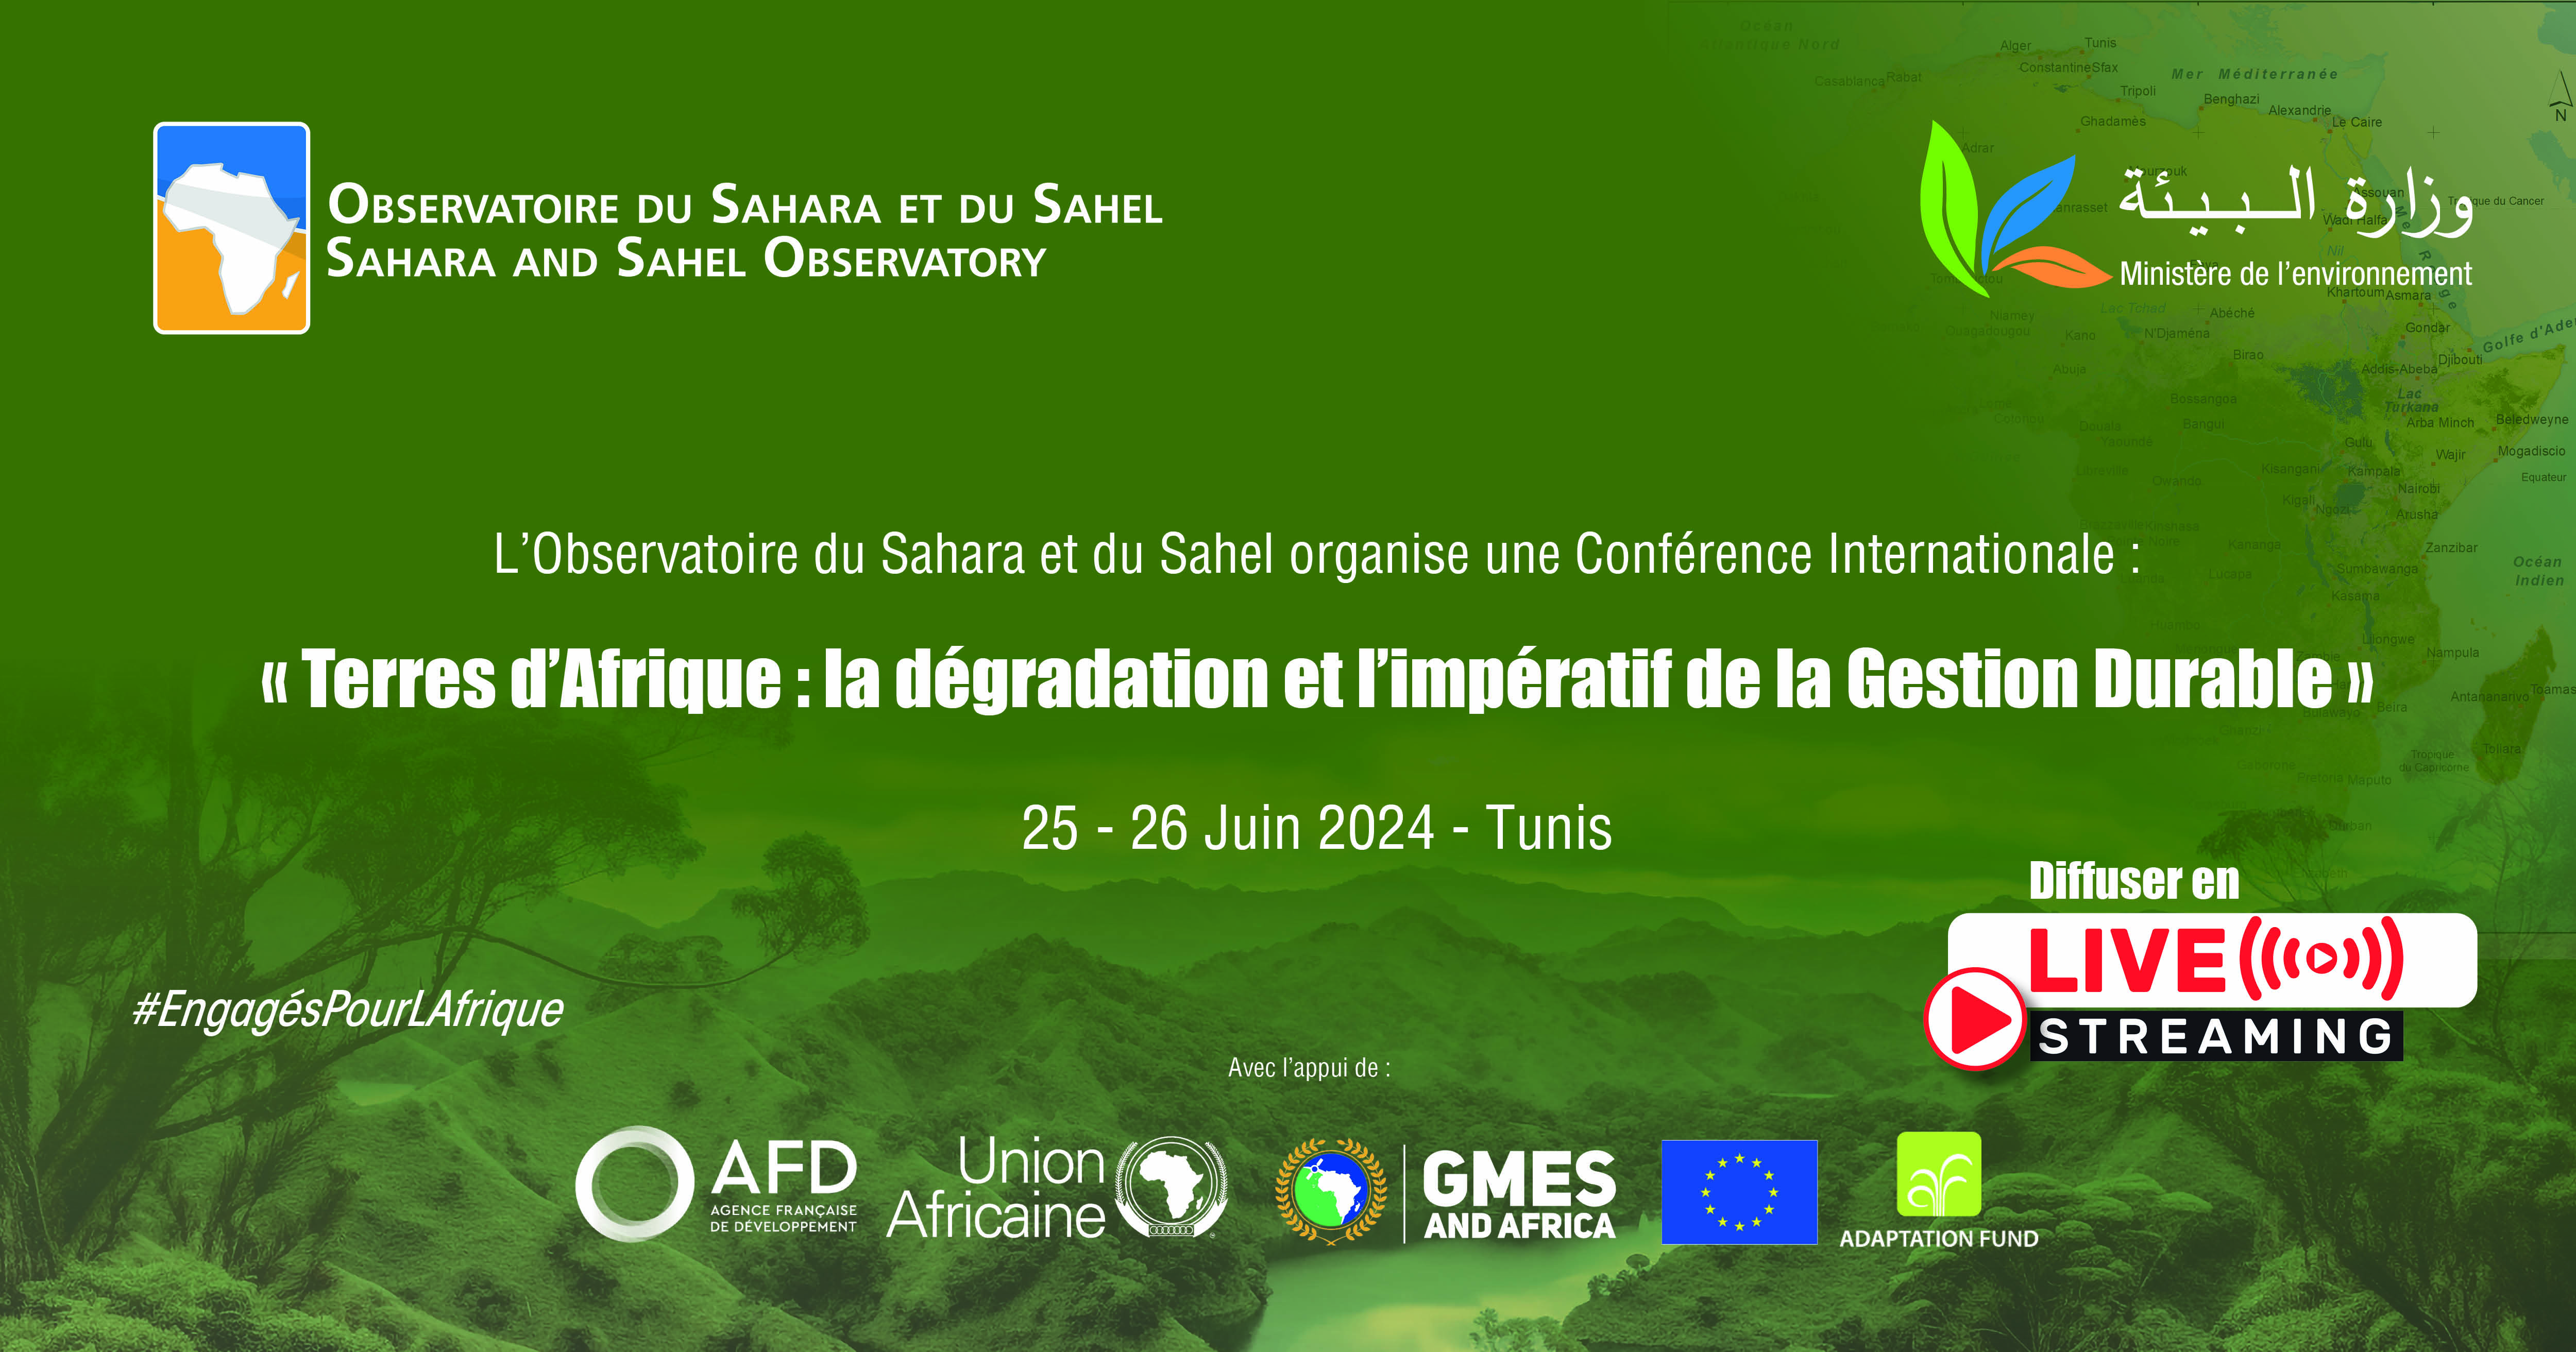  Conférence Internationale : Terres d’Afrique, la dégradation et l’impératif de la Gestion Durable